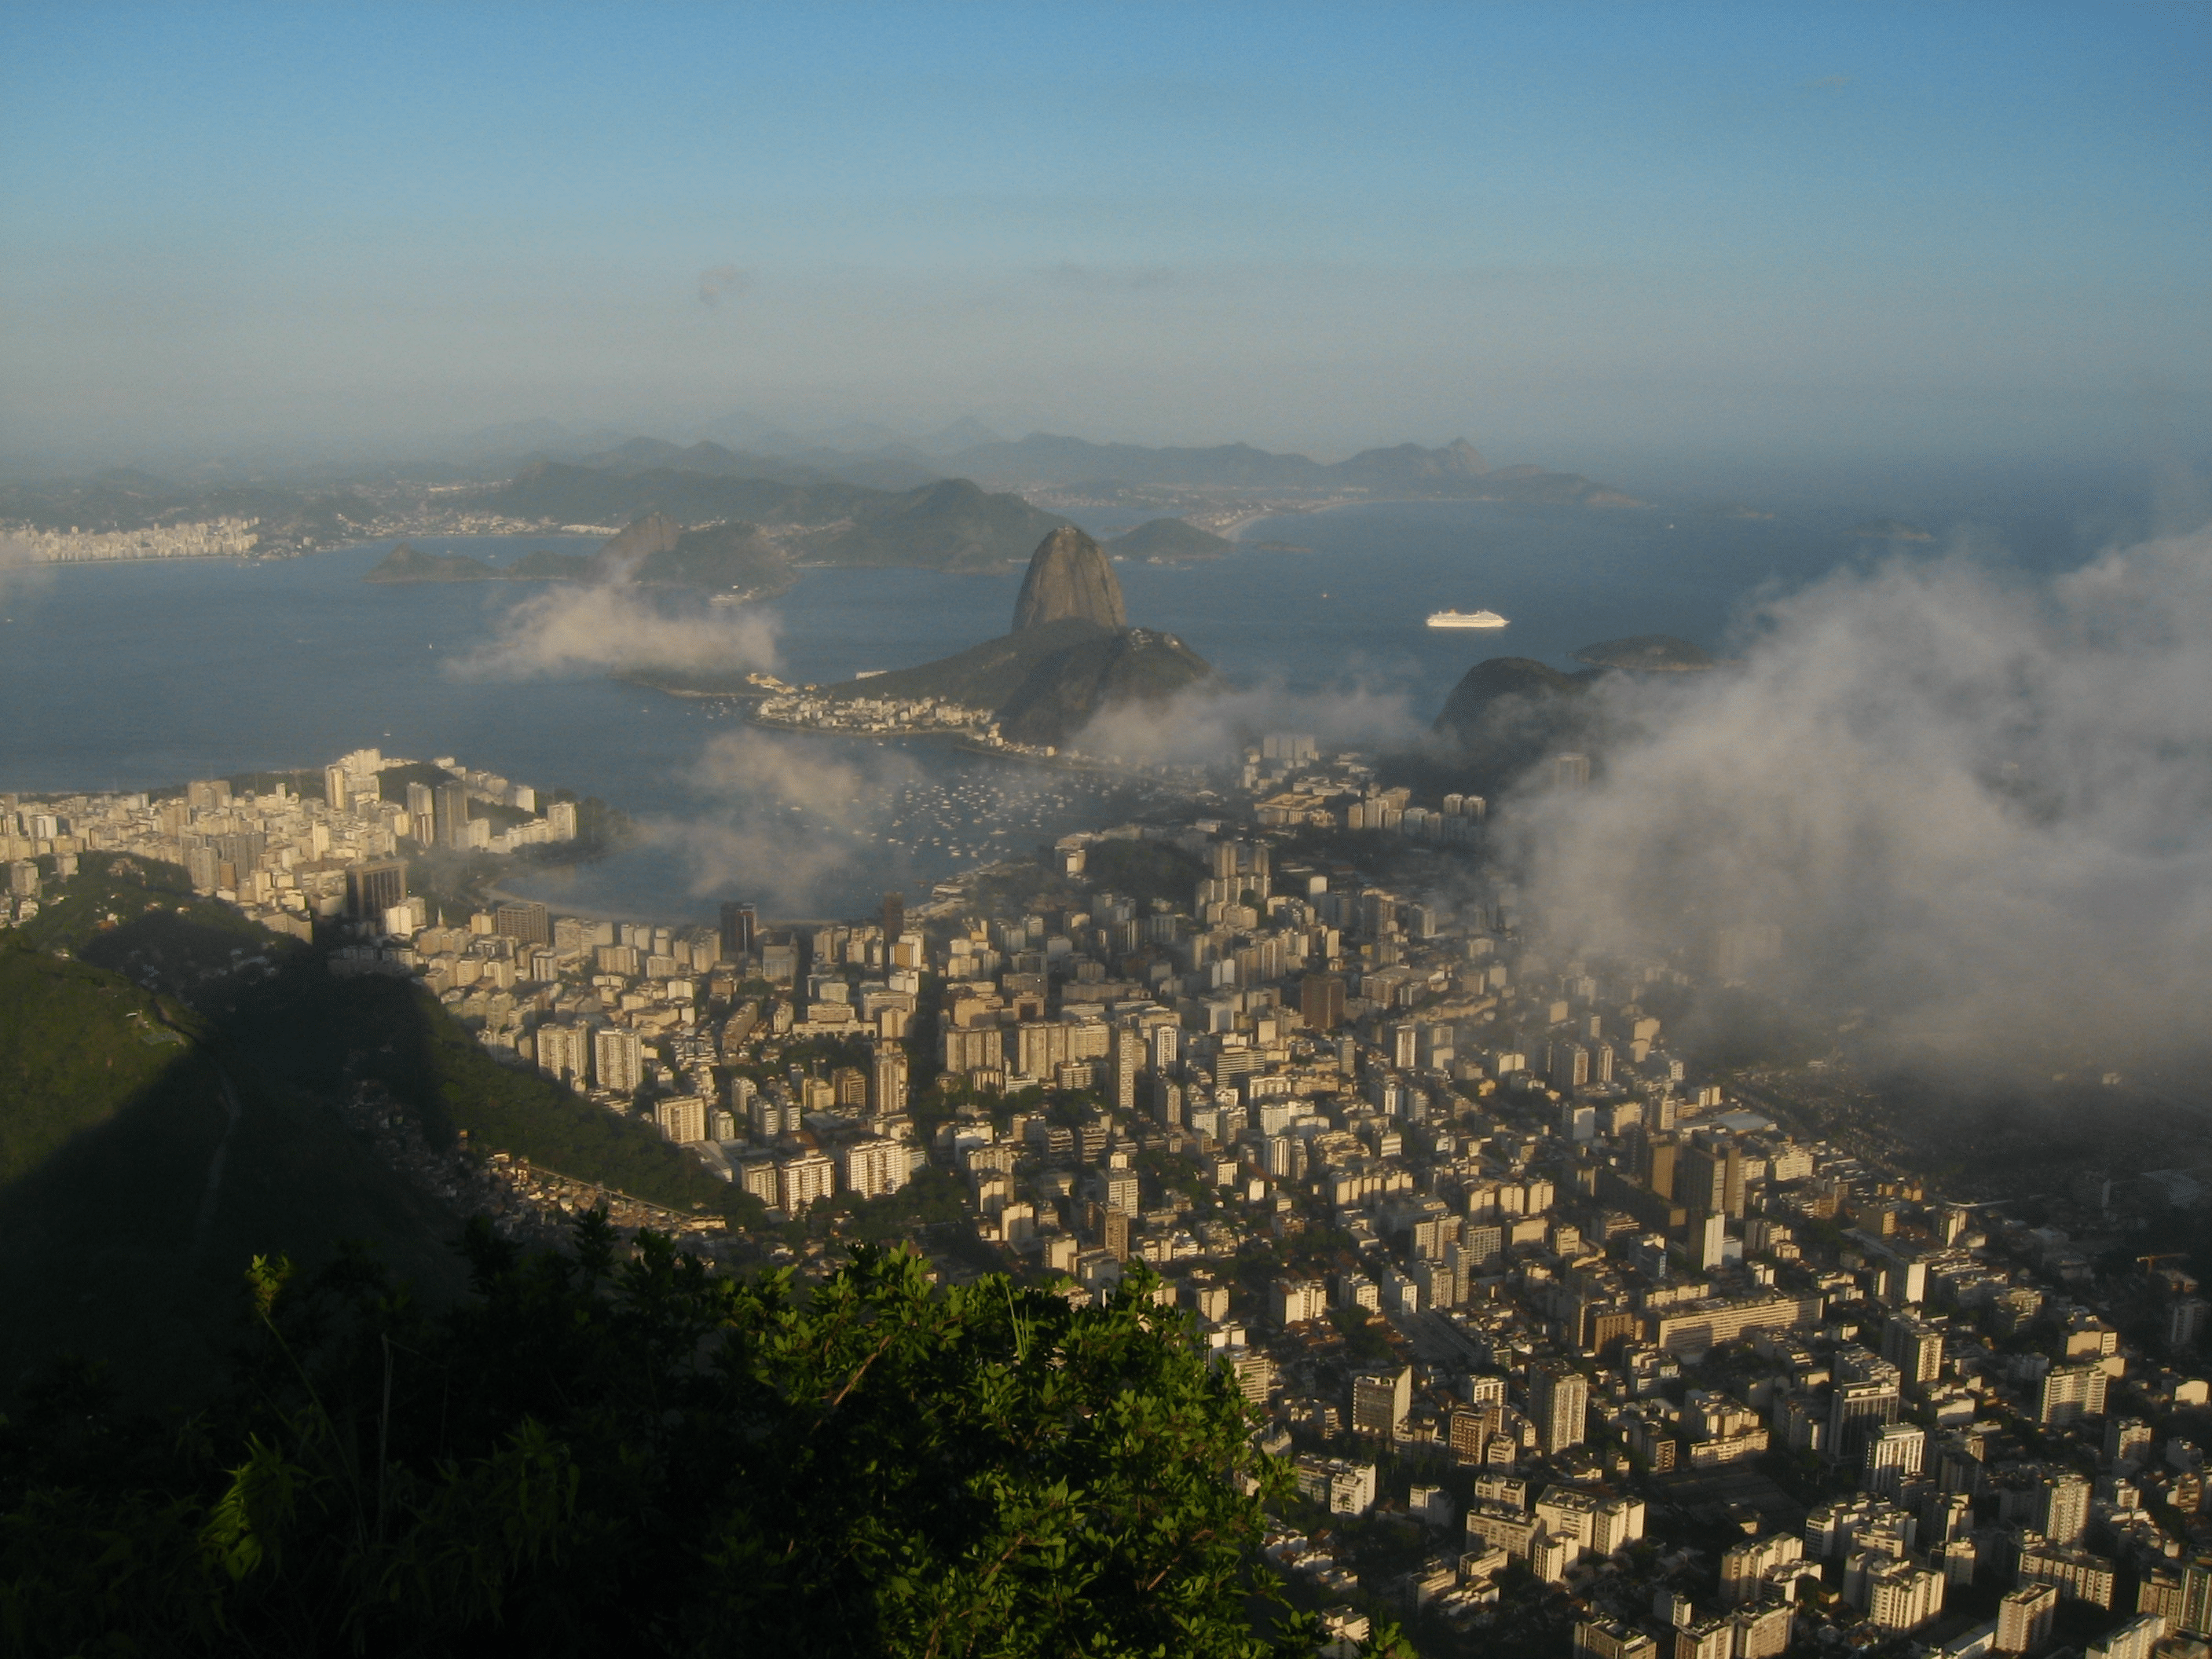 View of Sugar Loaf, Rio de Janeiro